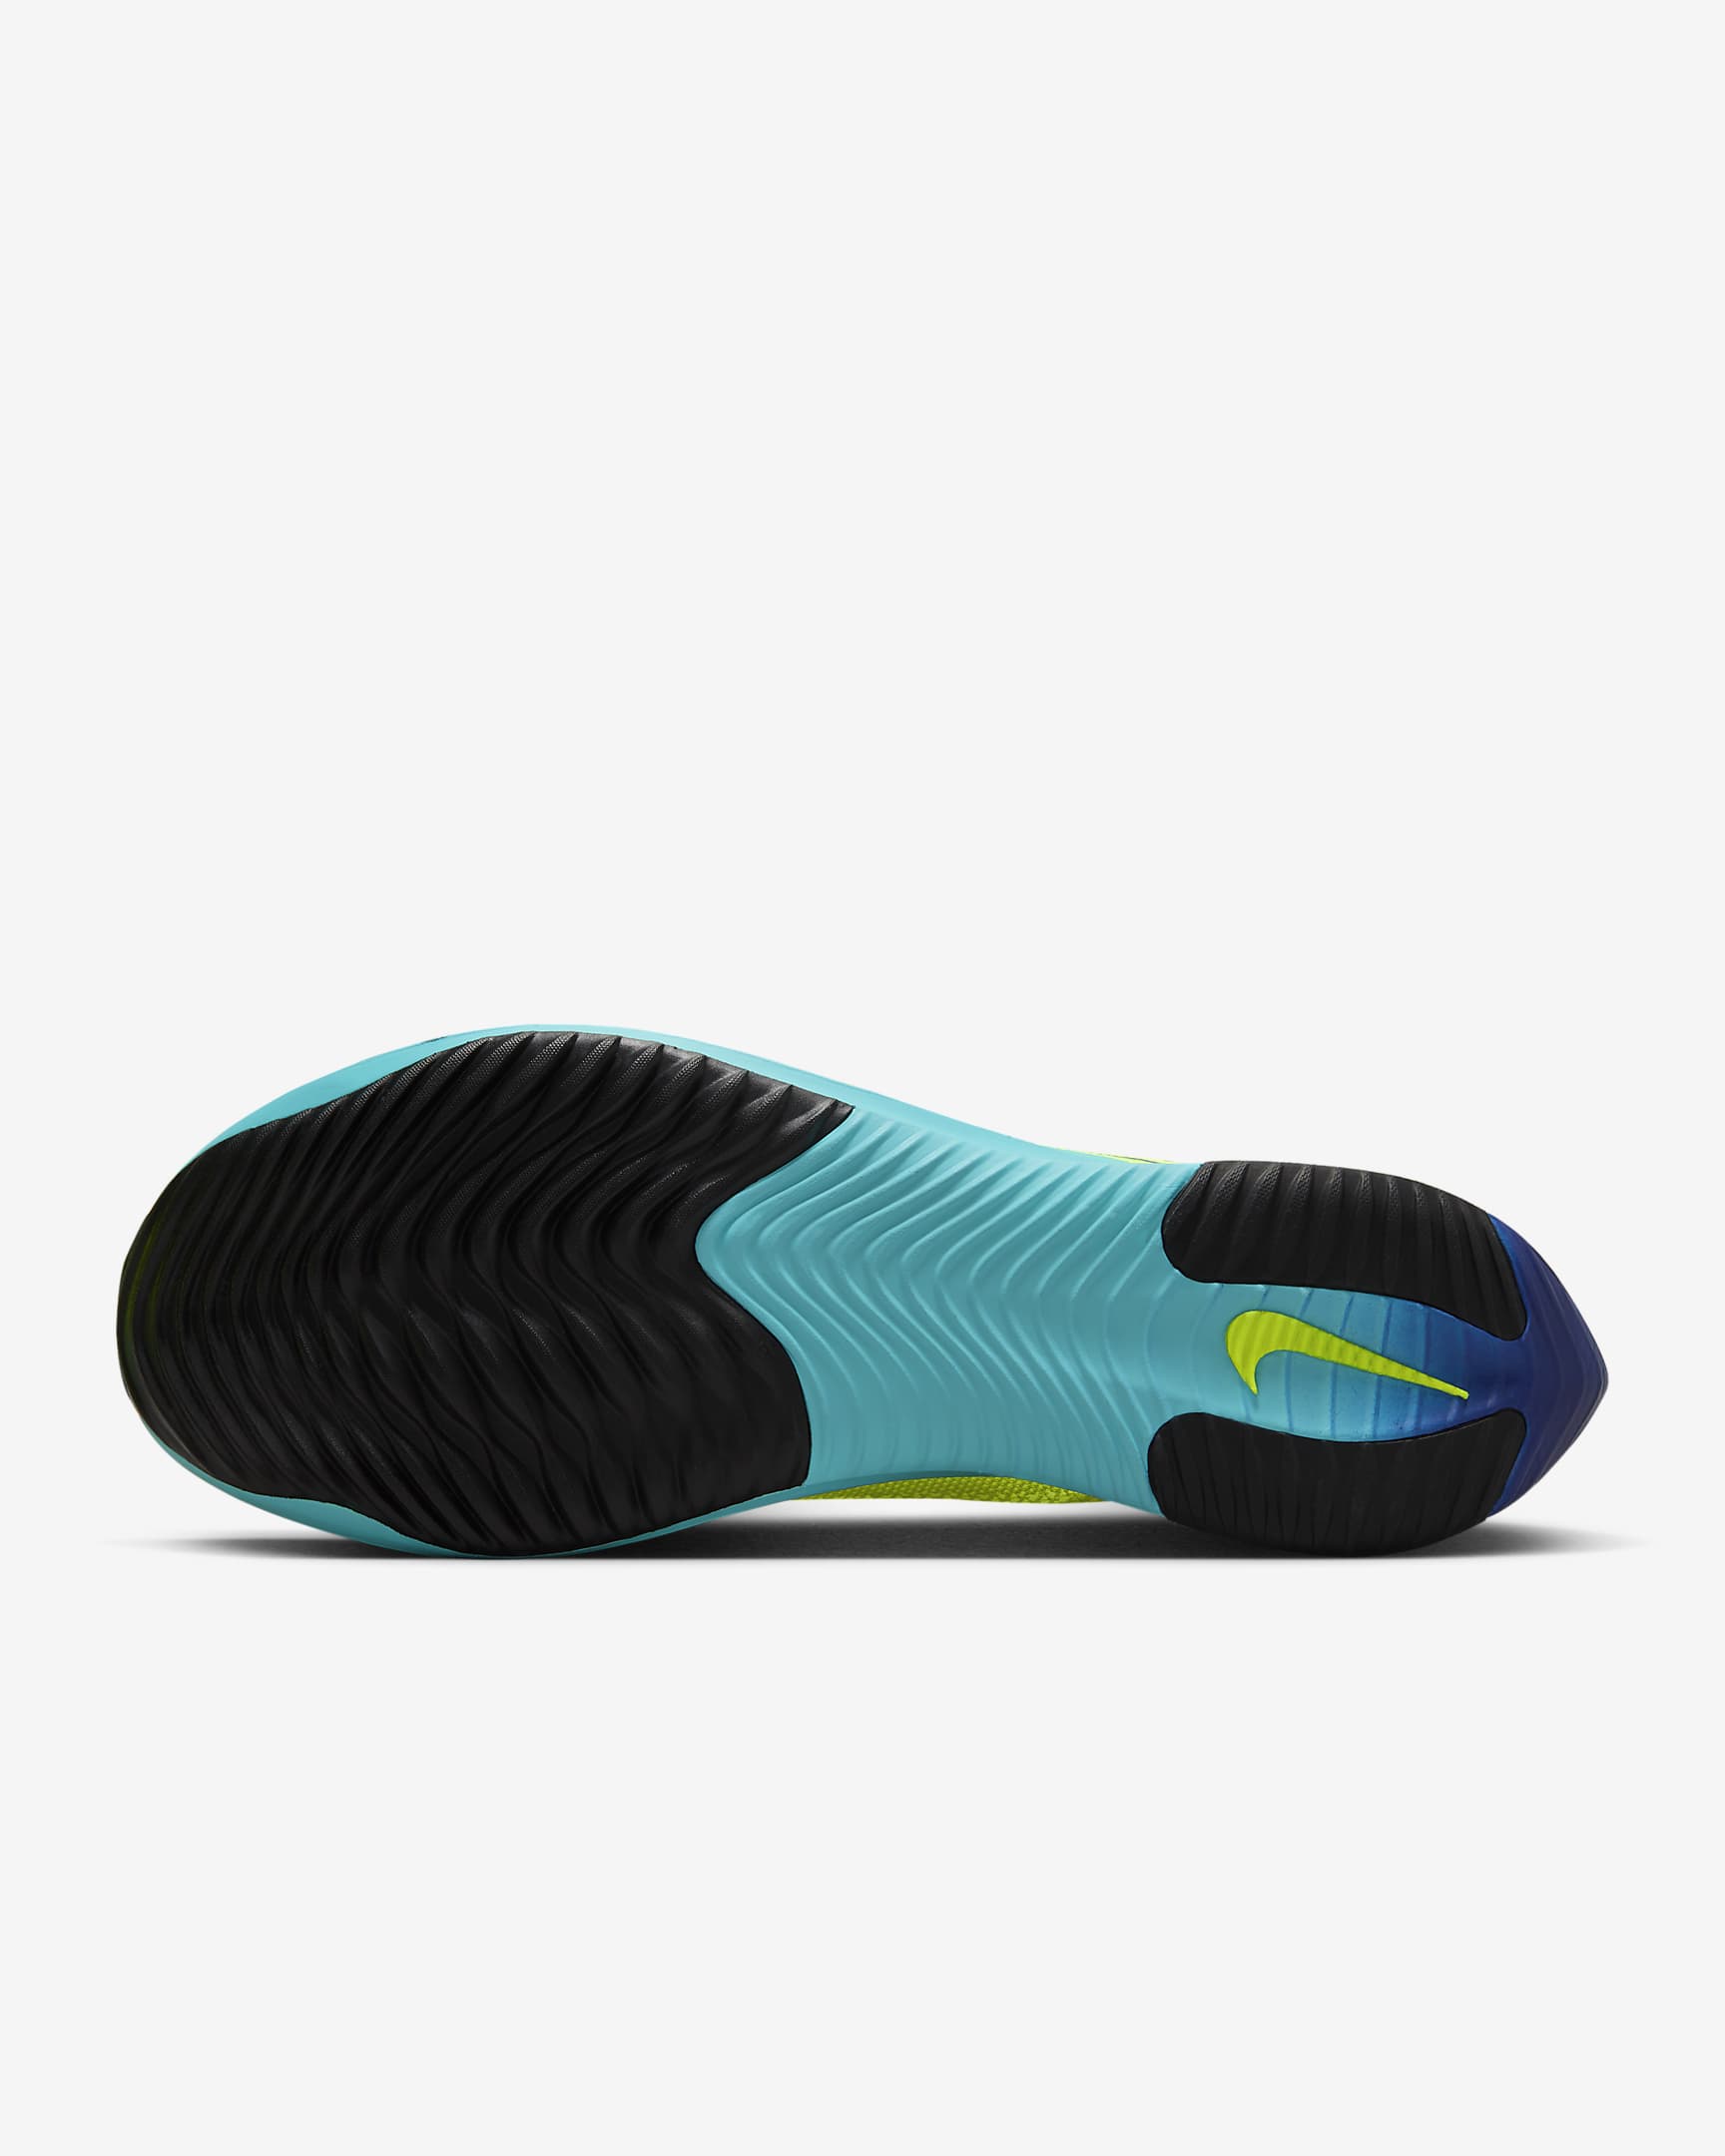 Nike Streakfly Zapatillas de competición para asfalto - Volt/Carmesí brillante/Volt/Negro